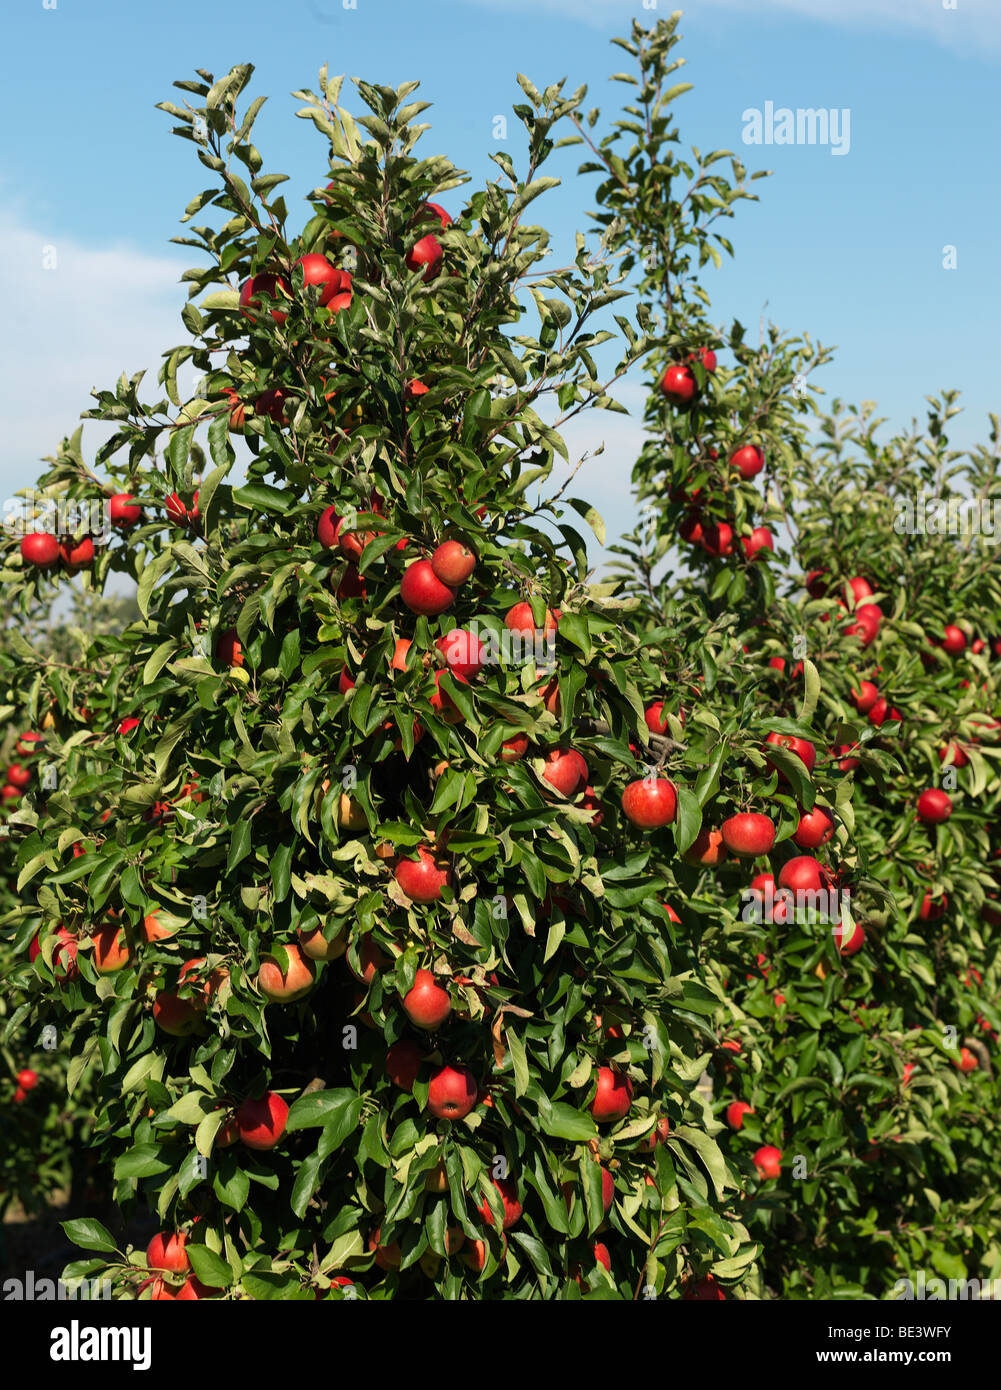 Apfelbäume im Bild während der Erntezeit im alten Land/Jork, Niedersachsen, Deutschland 16. September 2009 Stockfoto